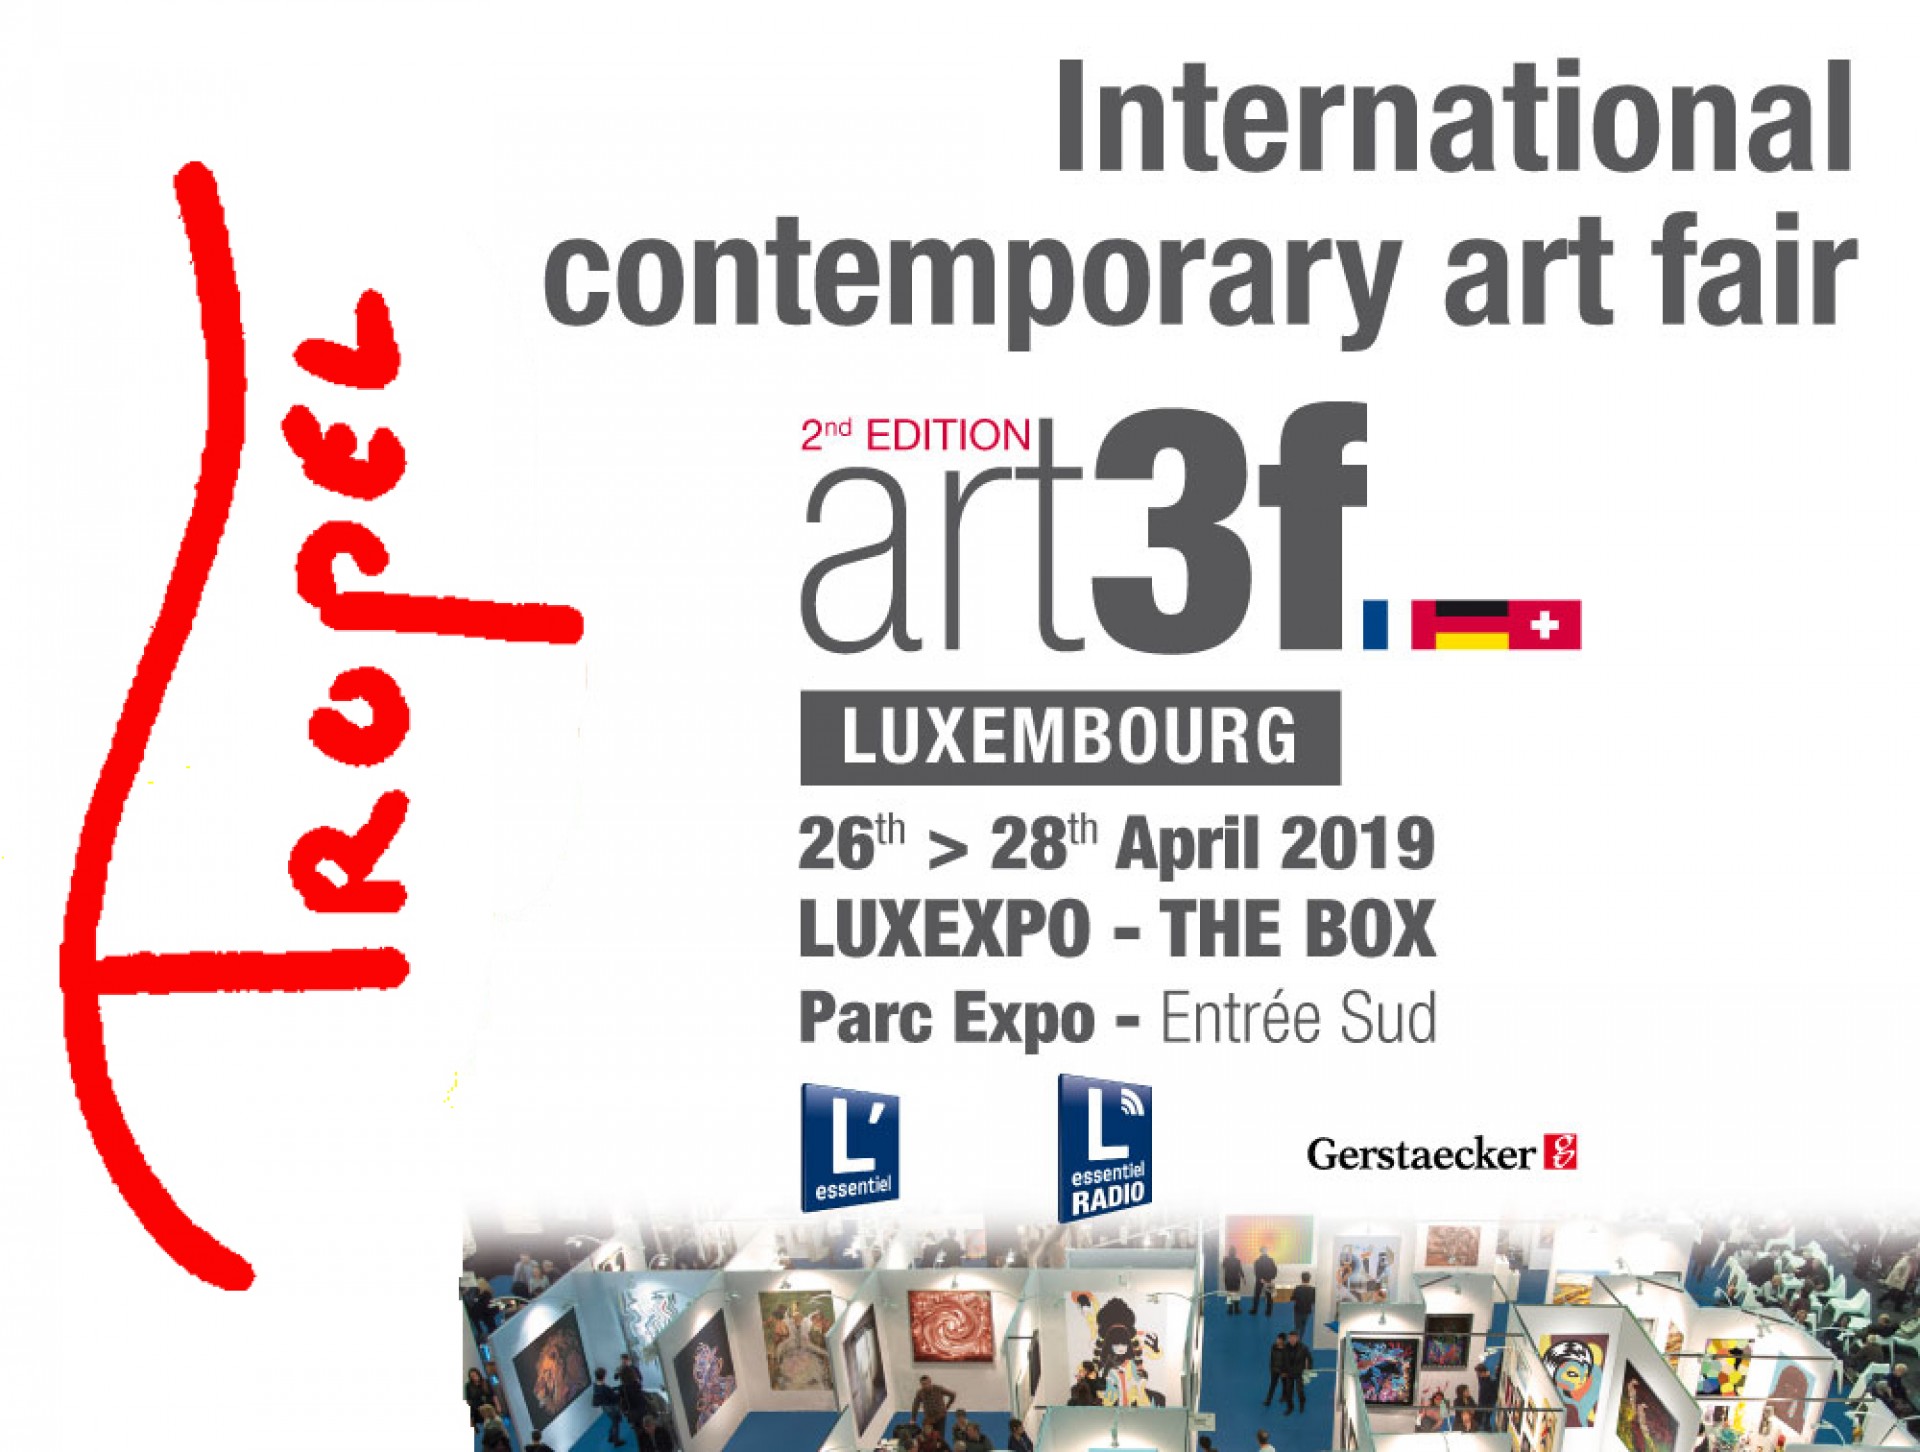 International contemporary art fair - Luxembourg